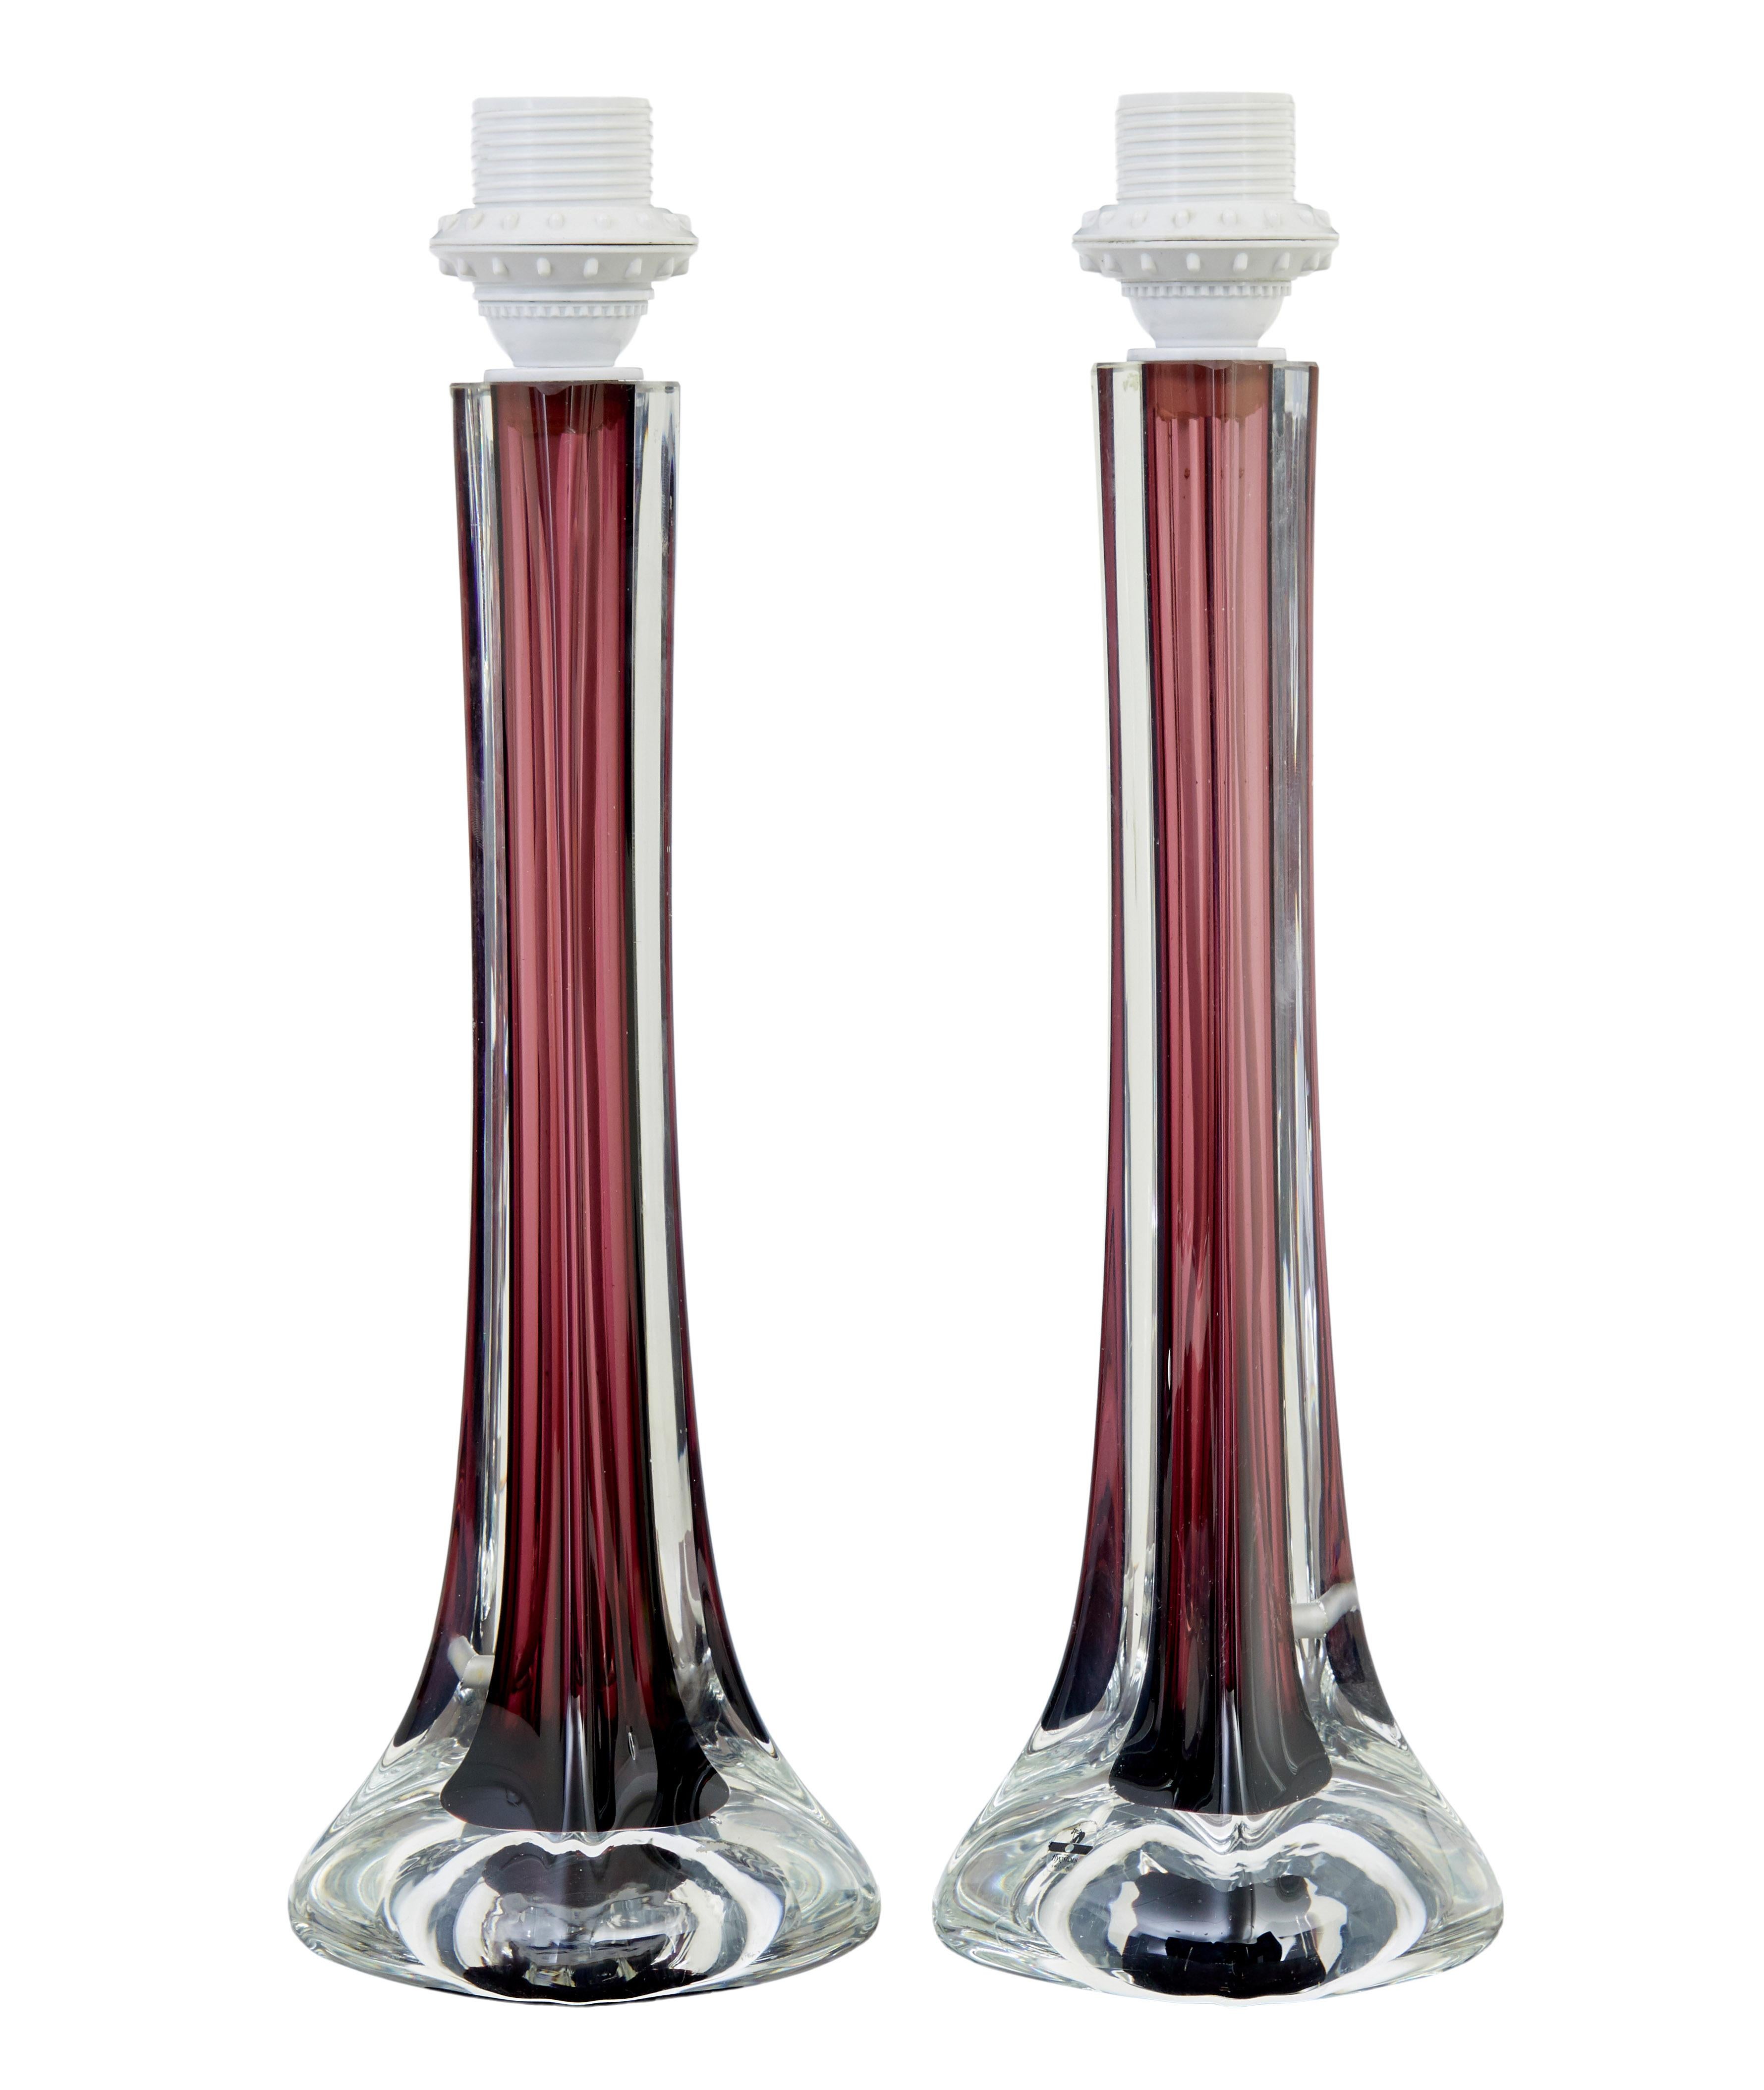 Ein Paar Tischlampen aus farbigem Glas von Flygsfors aus Schweden, Mitte des 20. Jahrhunderts, um 1960.

Bekanntes, von Paul Kedelv entworfenes Modell in Form einer Kokarde mit burgunderfarbenem Innenstiel, der in einen bauchigen Sockel